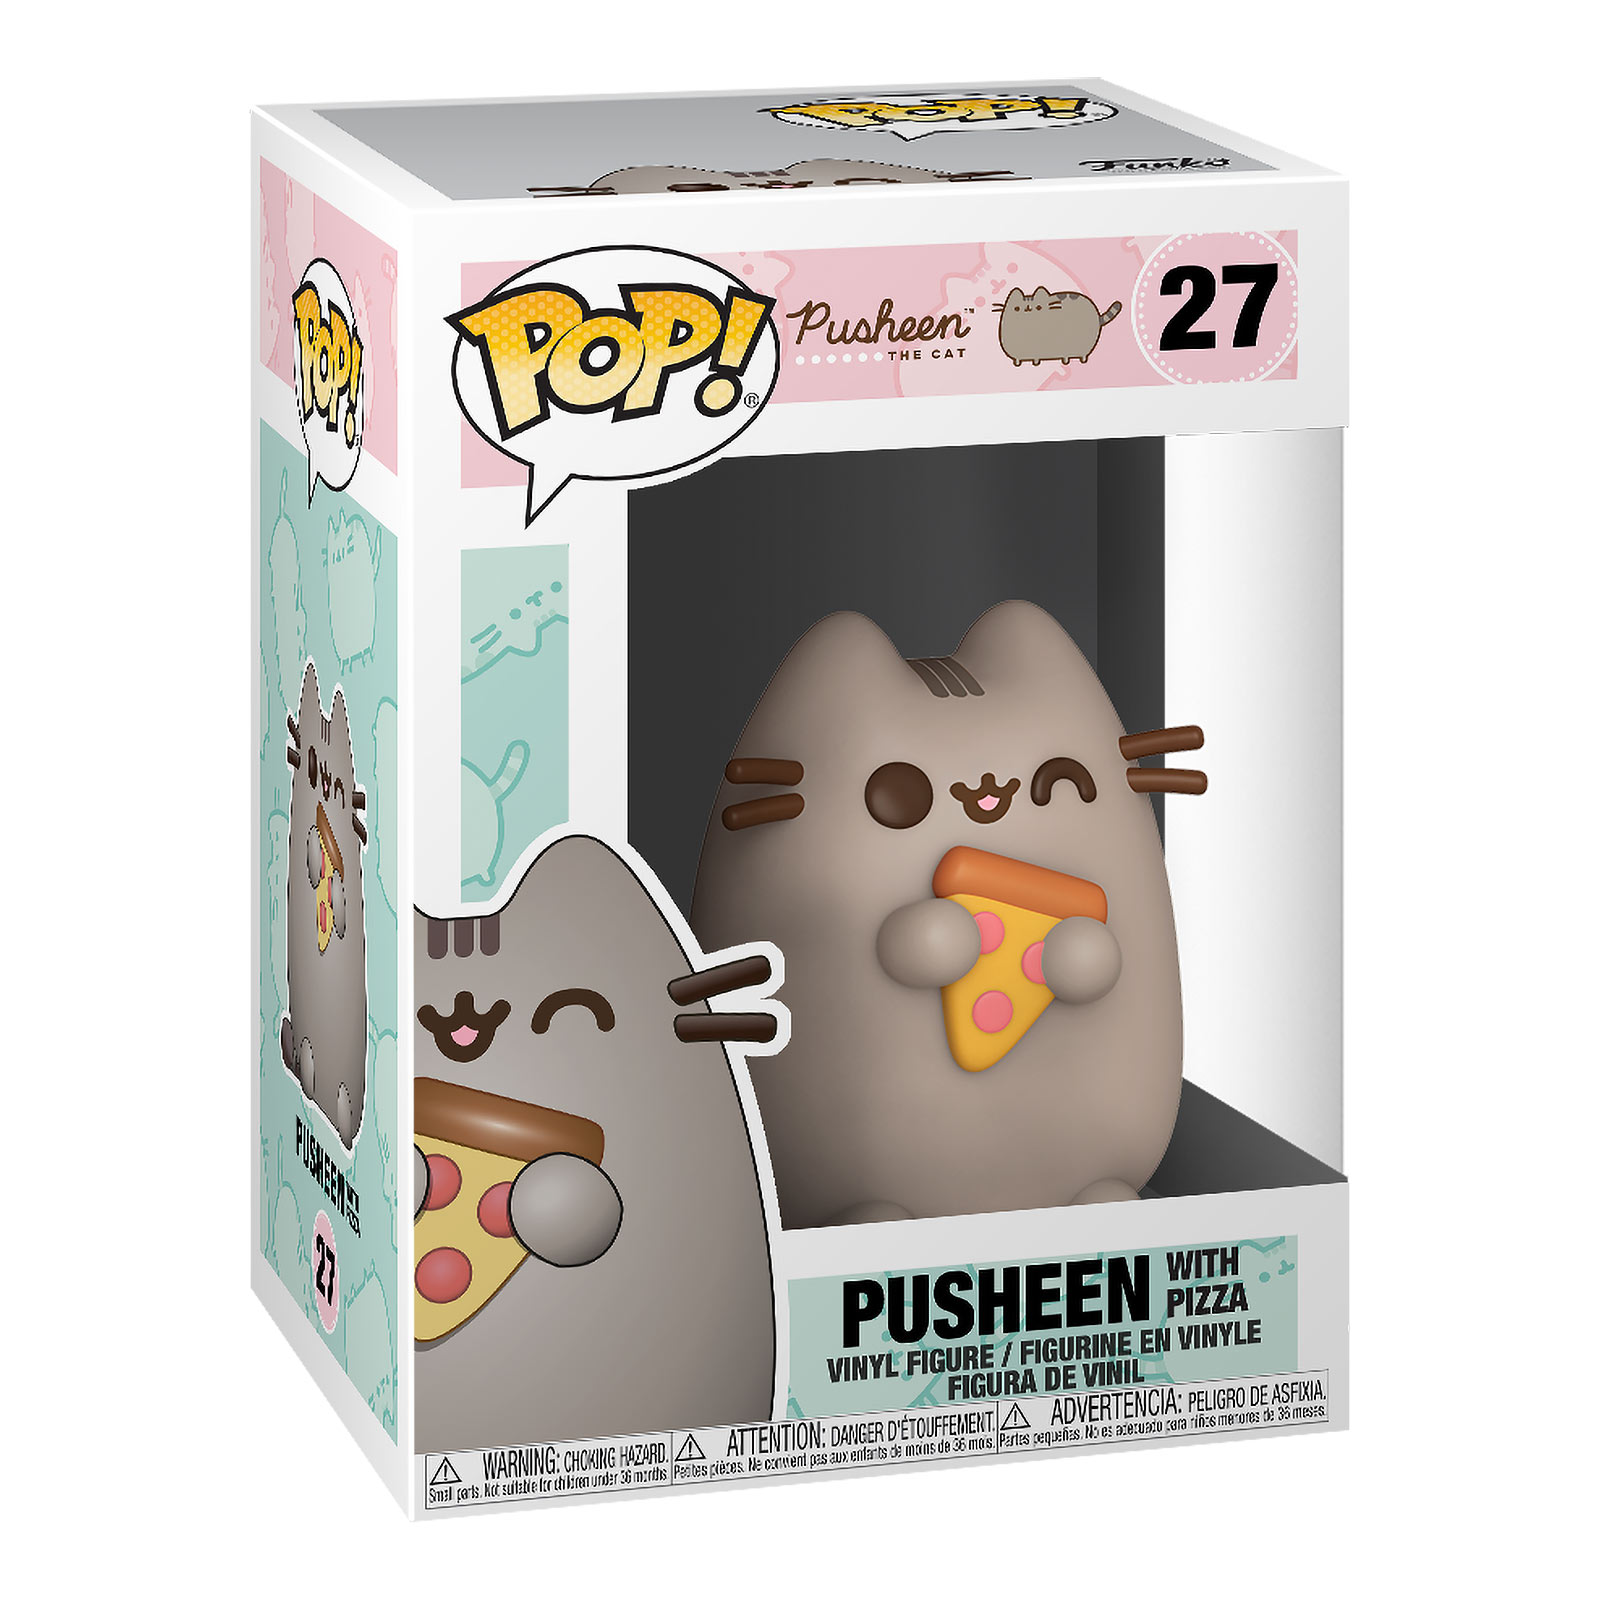 Pusheen with Pizza Funko Pop Figure